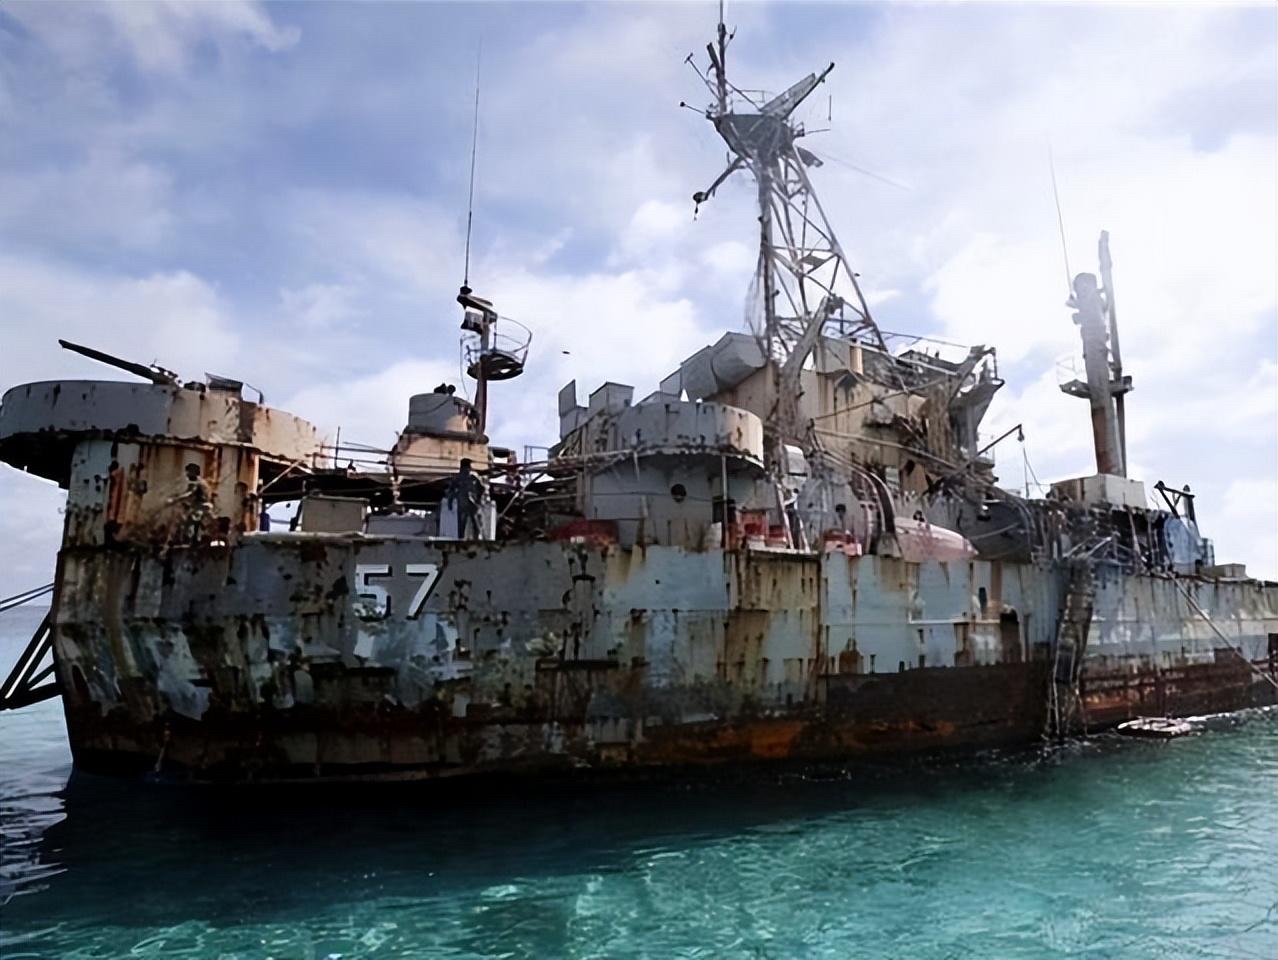 仁爱礁对峙现场，中方拖走菲律宾破船之日，就是重启填岛之时 -6parkbbs.com